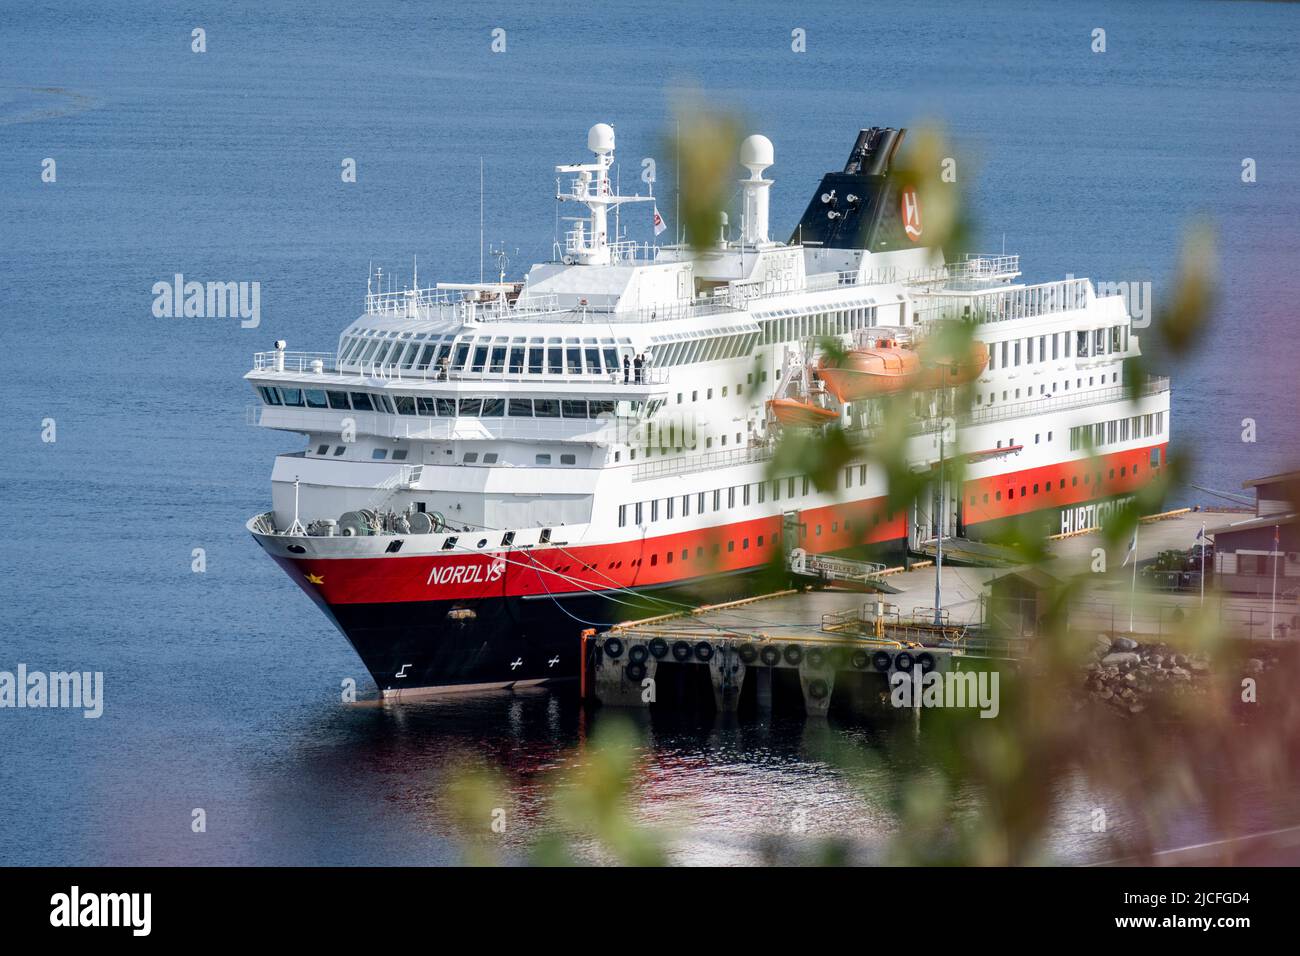 Norway, Troms og Finnmark, Kirkenes, The Hurtigruten ship 'Nordlys' in the harbor. Stock Photo